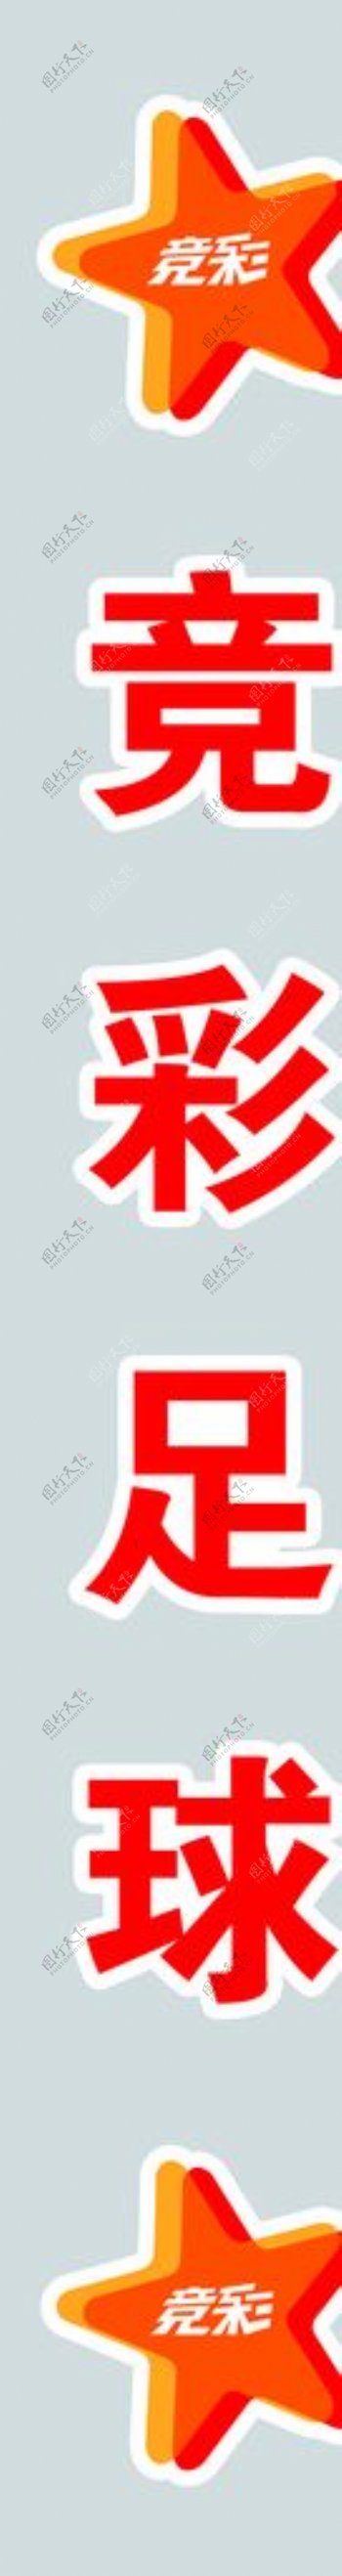 体育彩票竞彩logo标志图片